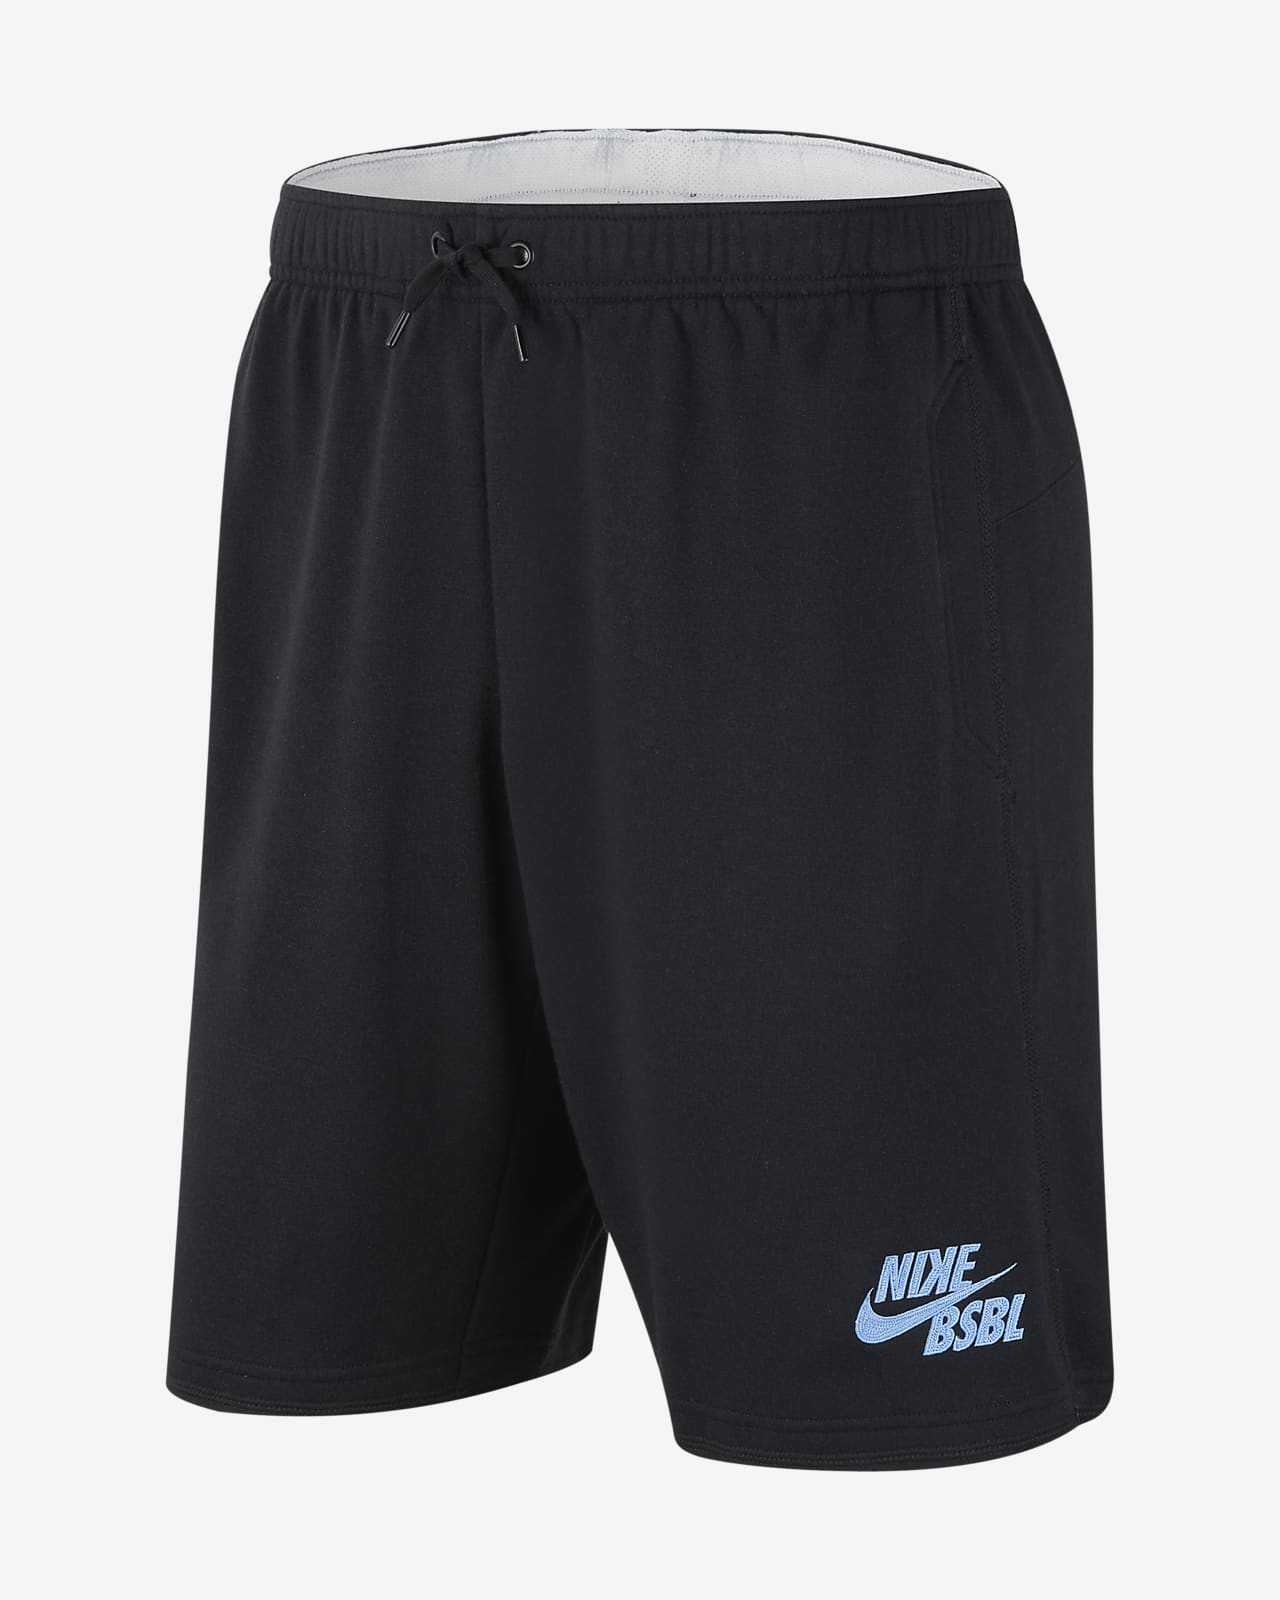 Shorts de béisbol para hombre Nike Dri-FIT Flux. Nike.com